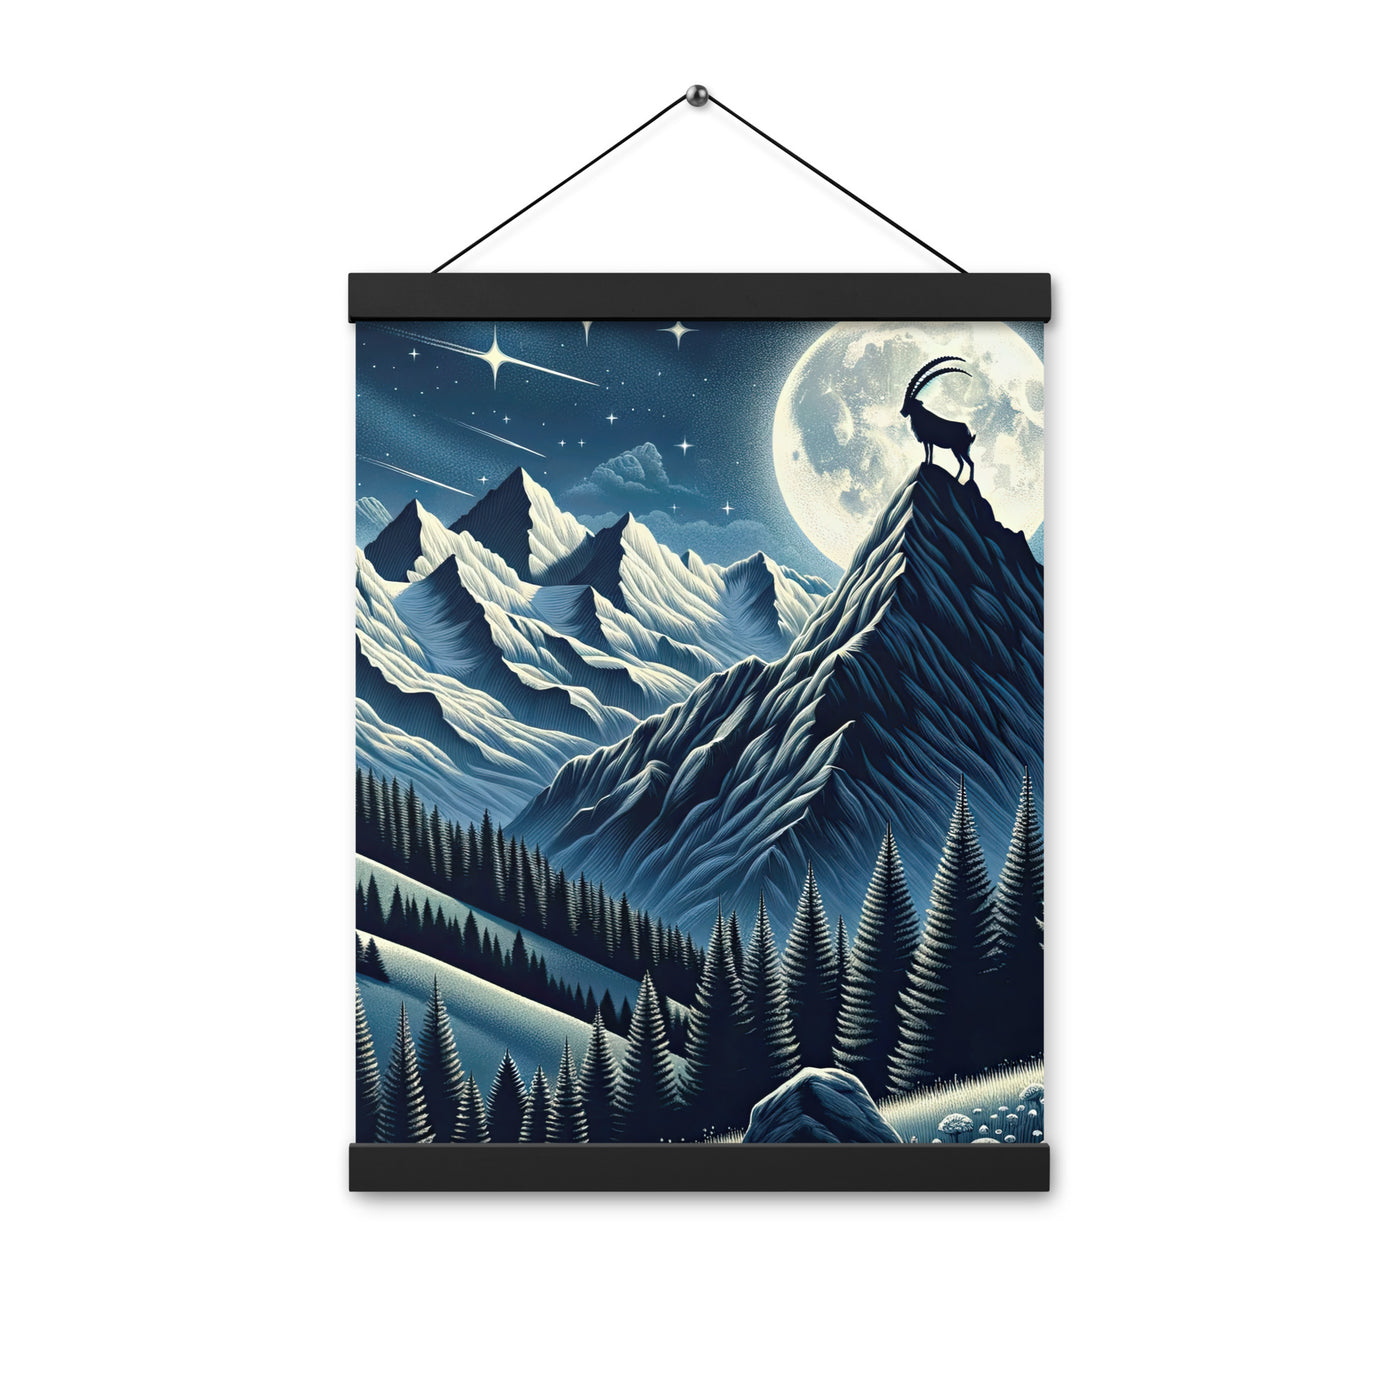 Steinbock in Alpennacht, silberne Berge und Sternenhimmel - Premium Poster mit Aufhängung berge xxx yyy zzz 30.5 x 40.6 cm